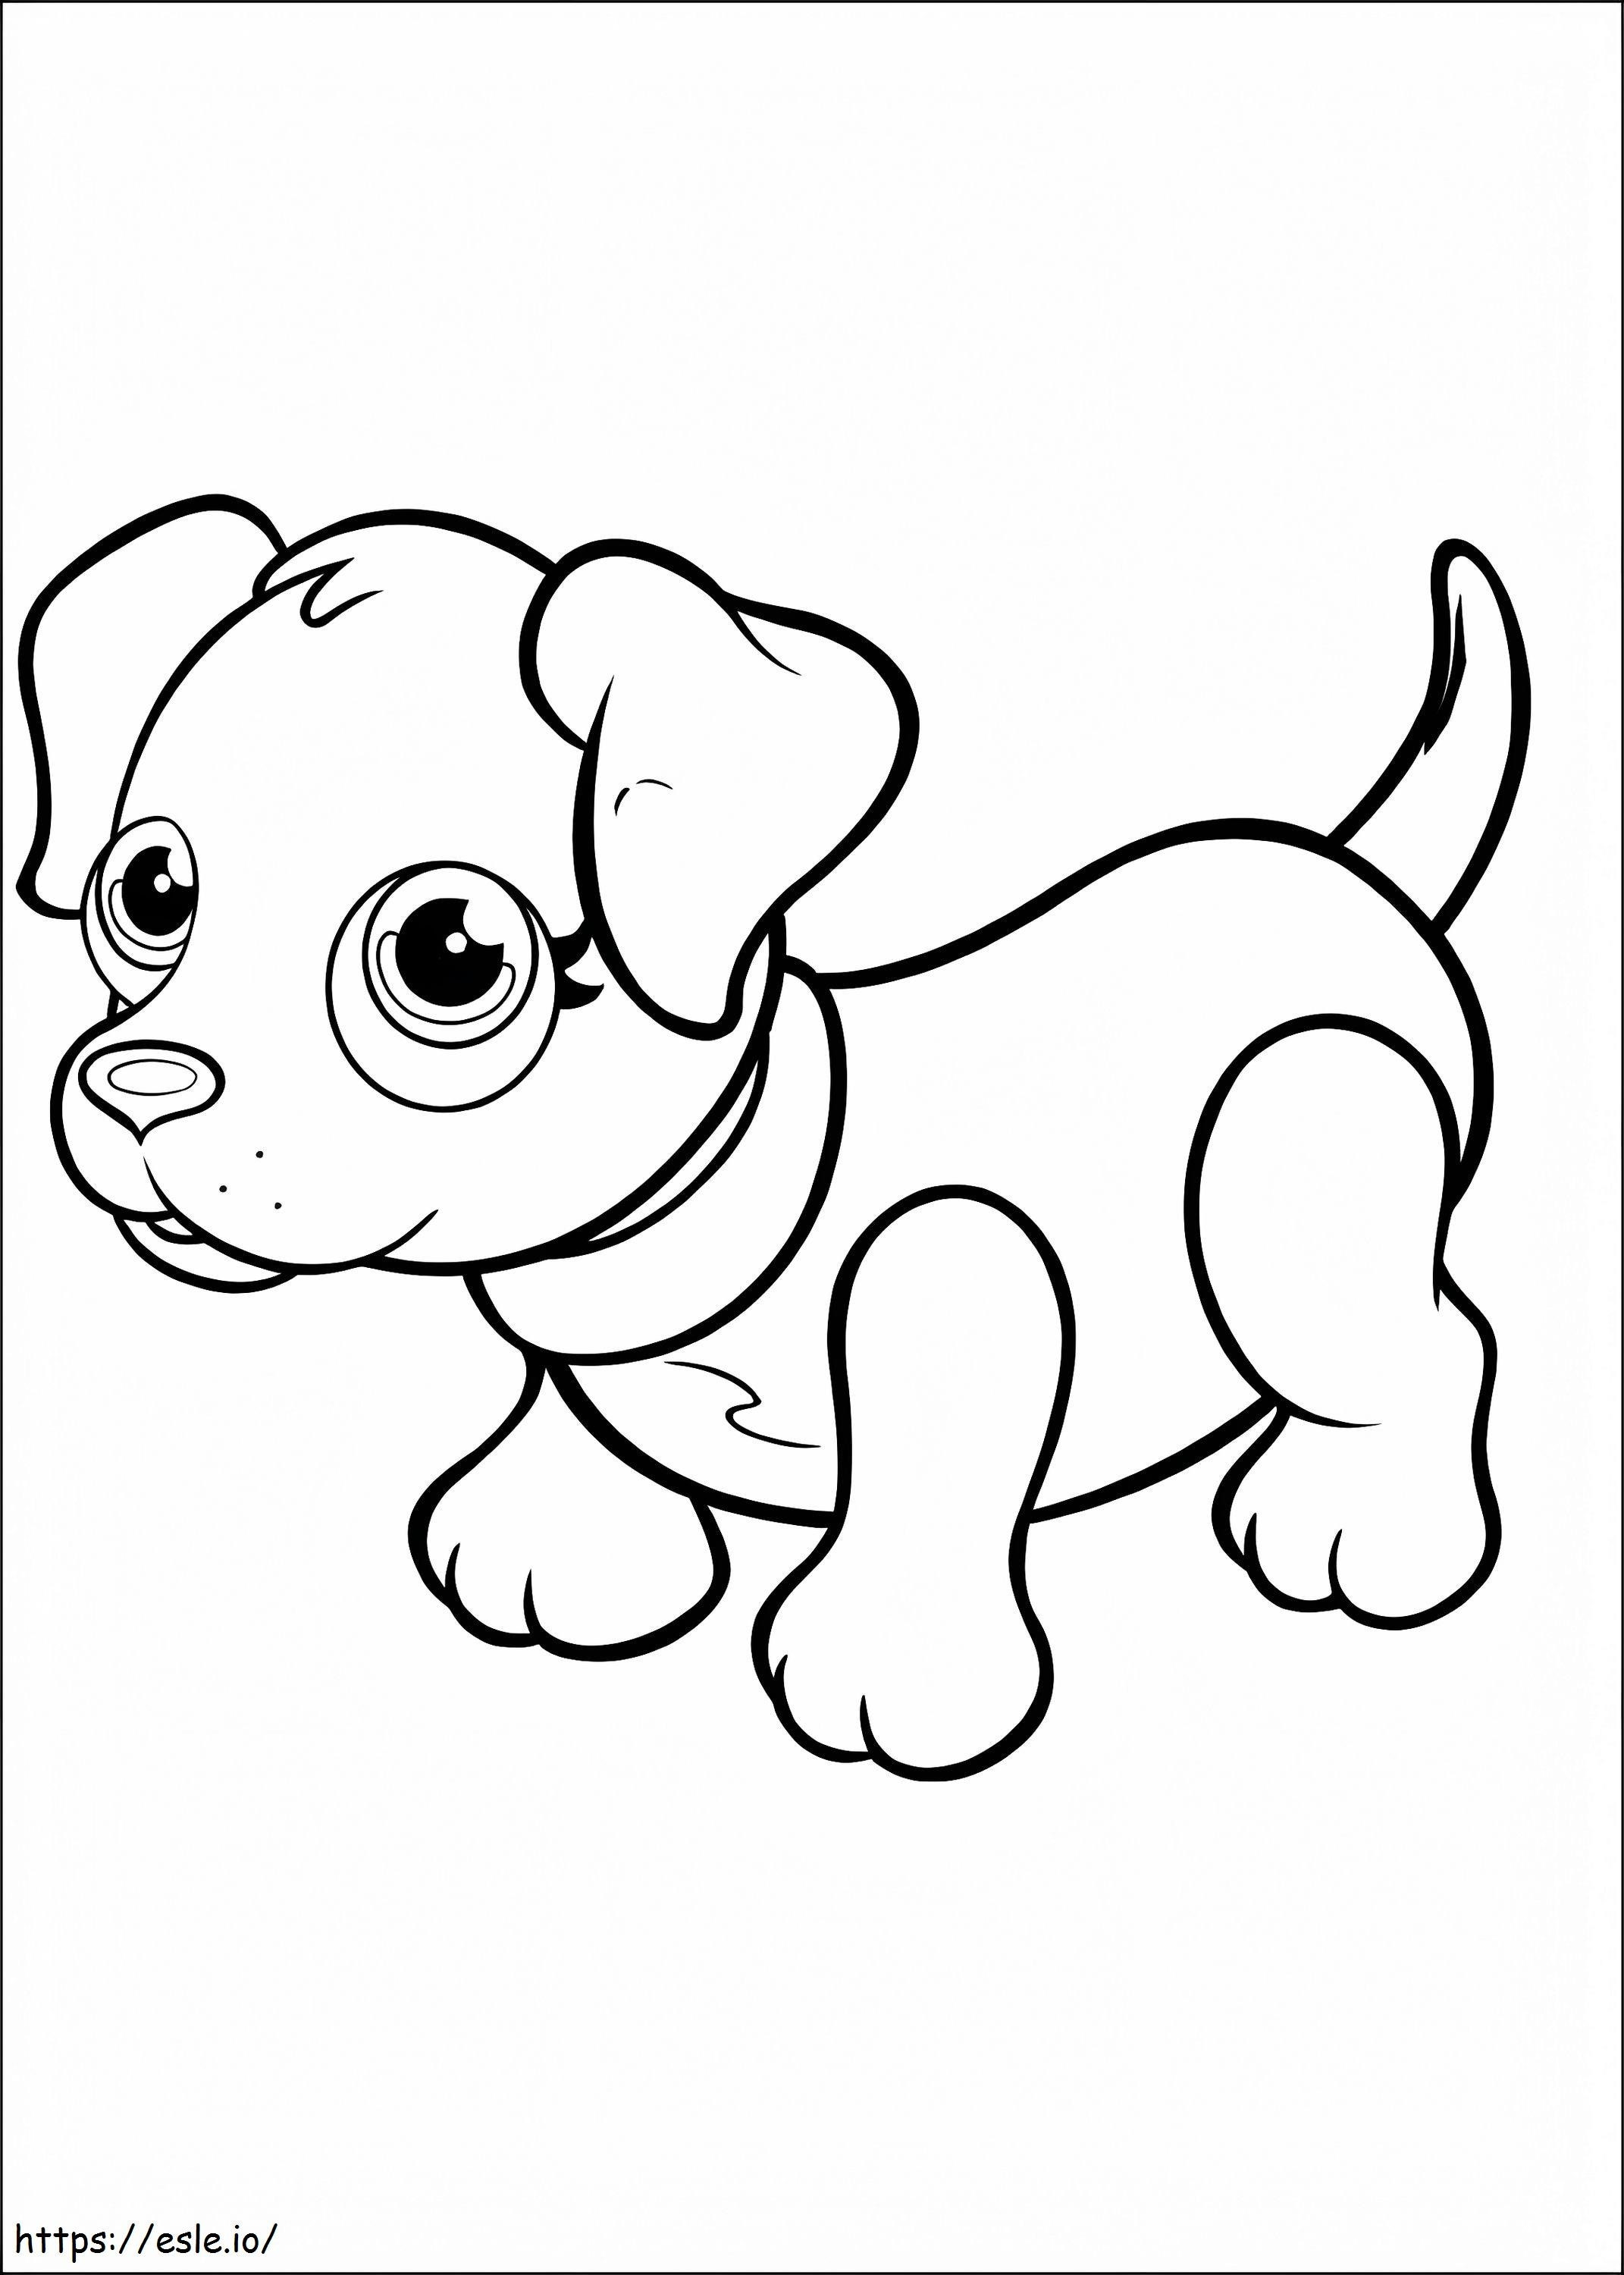 Black Labrador Pet Parade coloring page